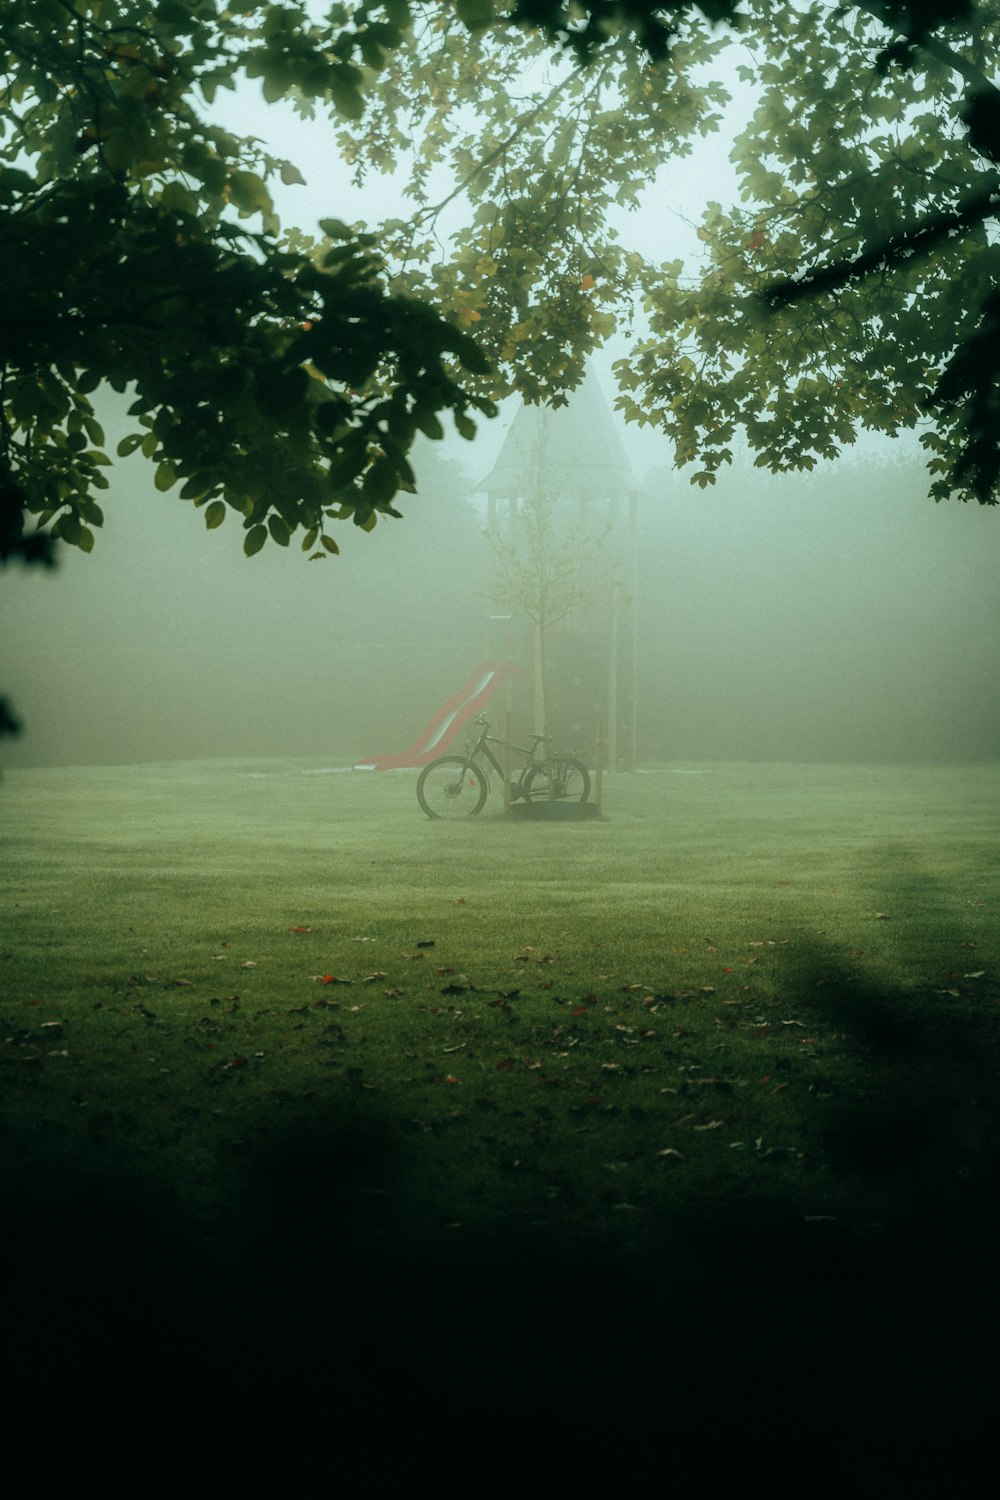 Un vélo est garé dans un champ dans le brouillard